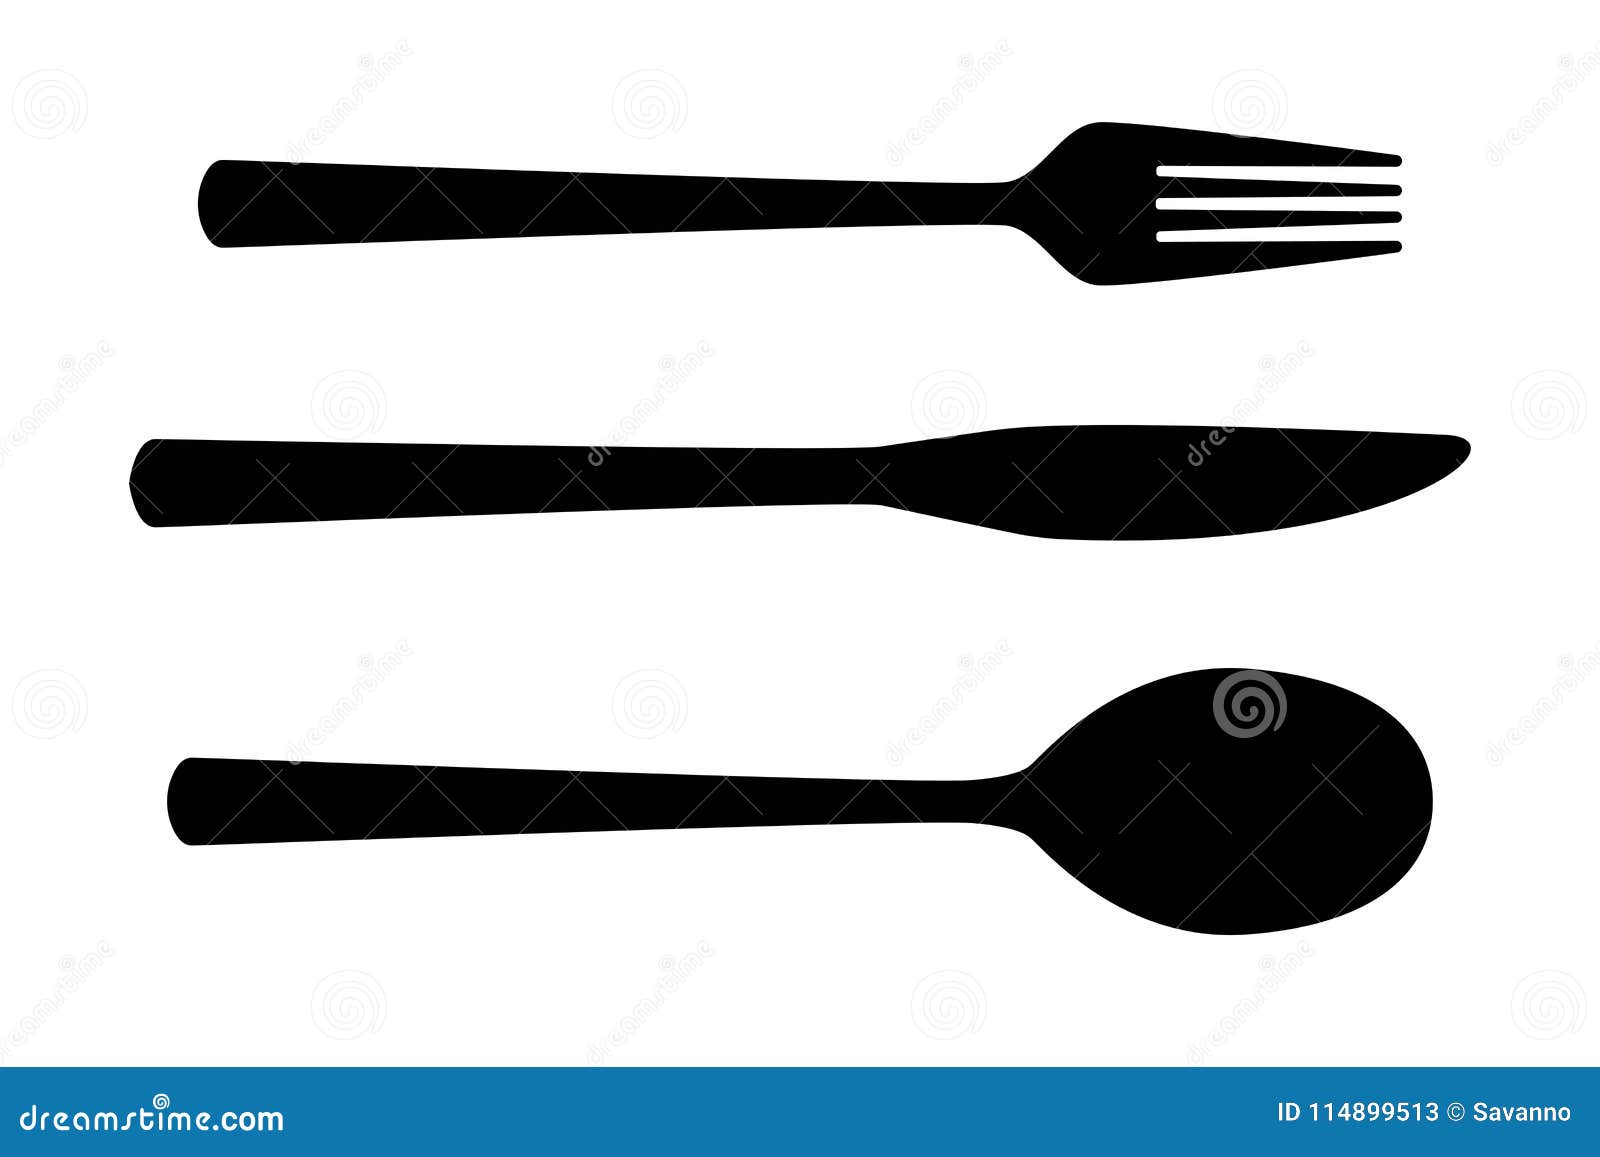 cutlery set. black silhouette - spoon, fork, knife